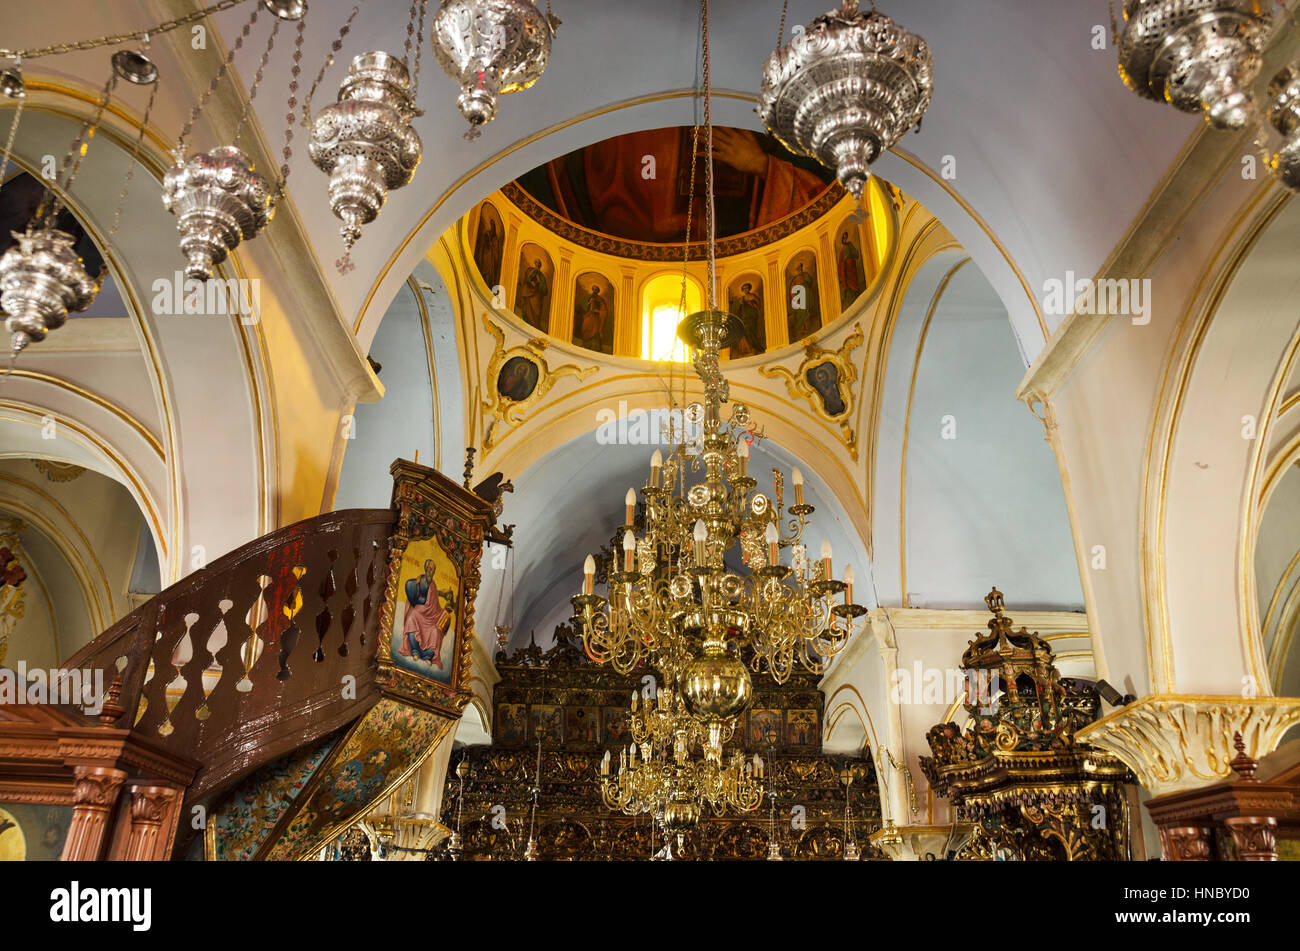 La Grèce, Mikonos - Août 21, 2013 : l'intérieur de l'église orthodoxe le 21 août 2013 en Grèce, de Mikonos. Banque D'Images